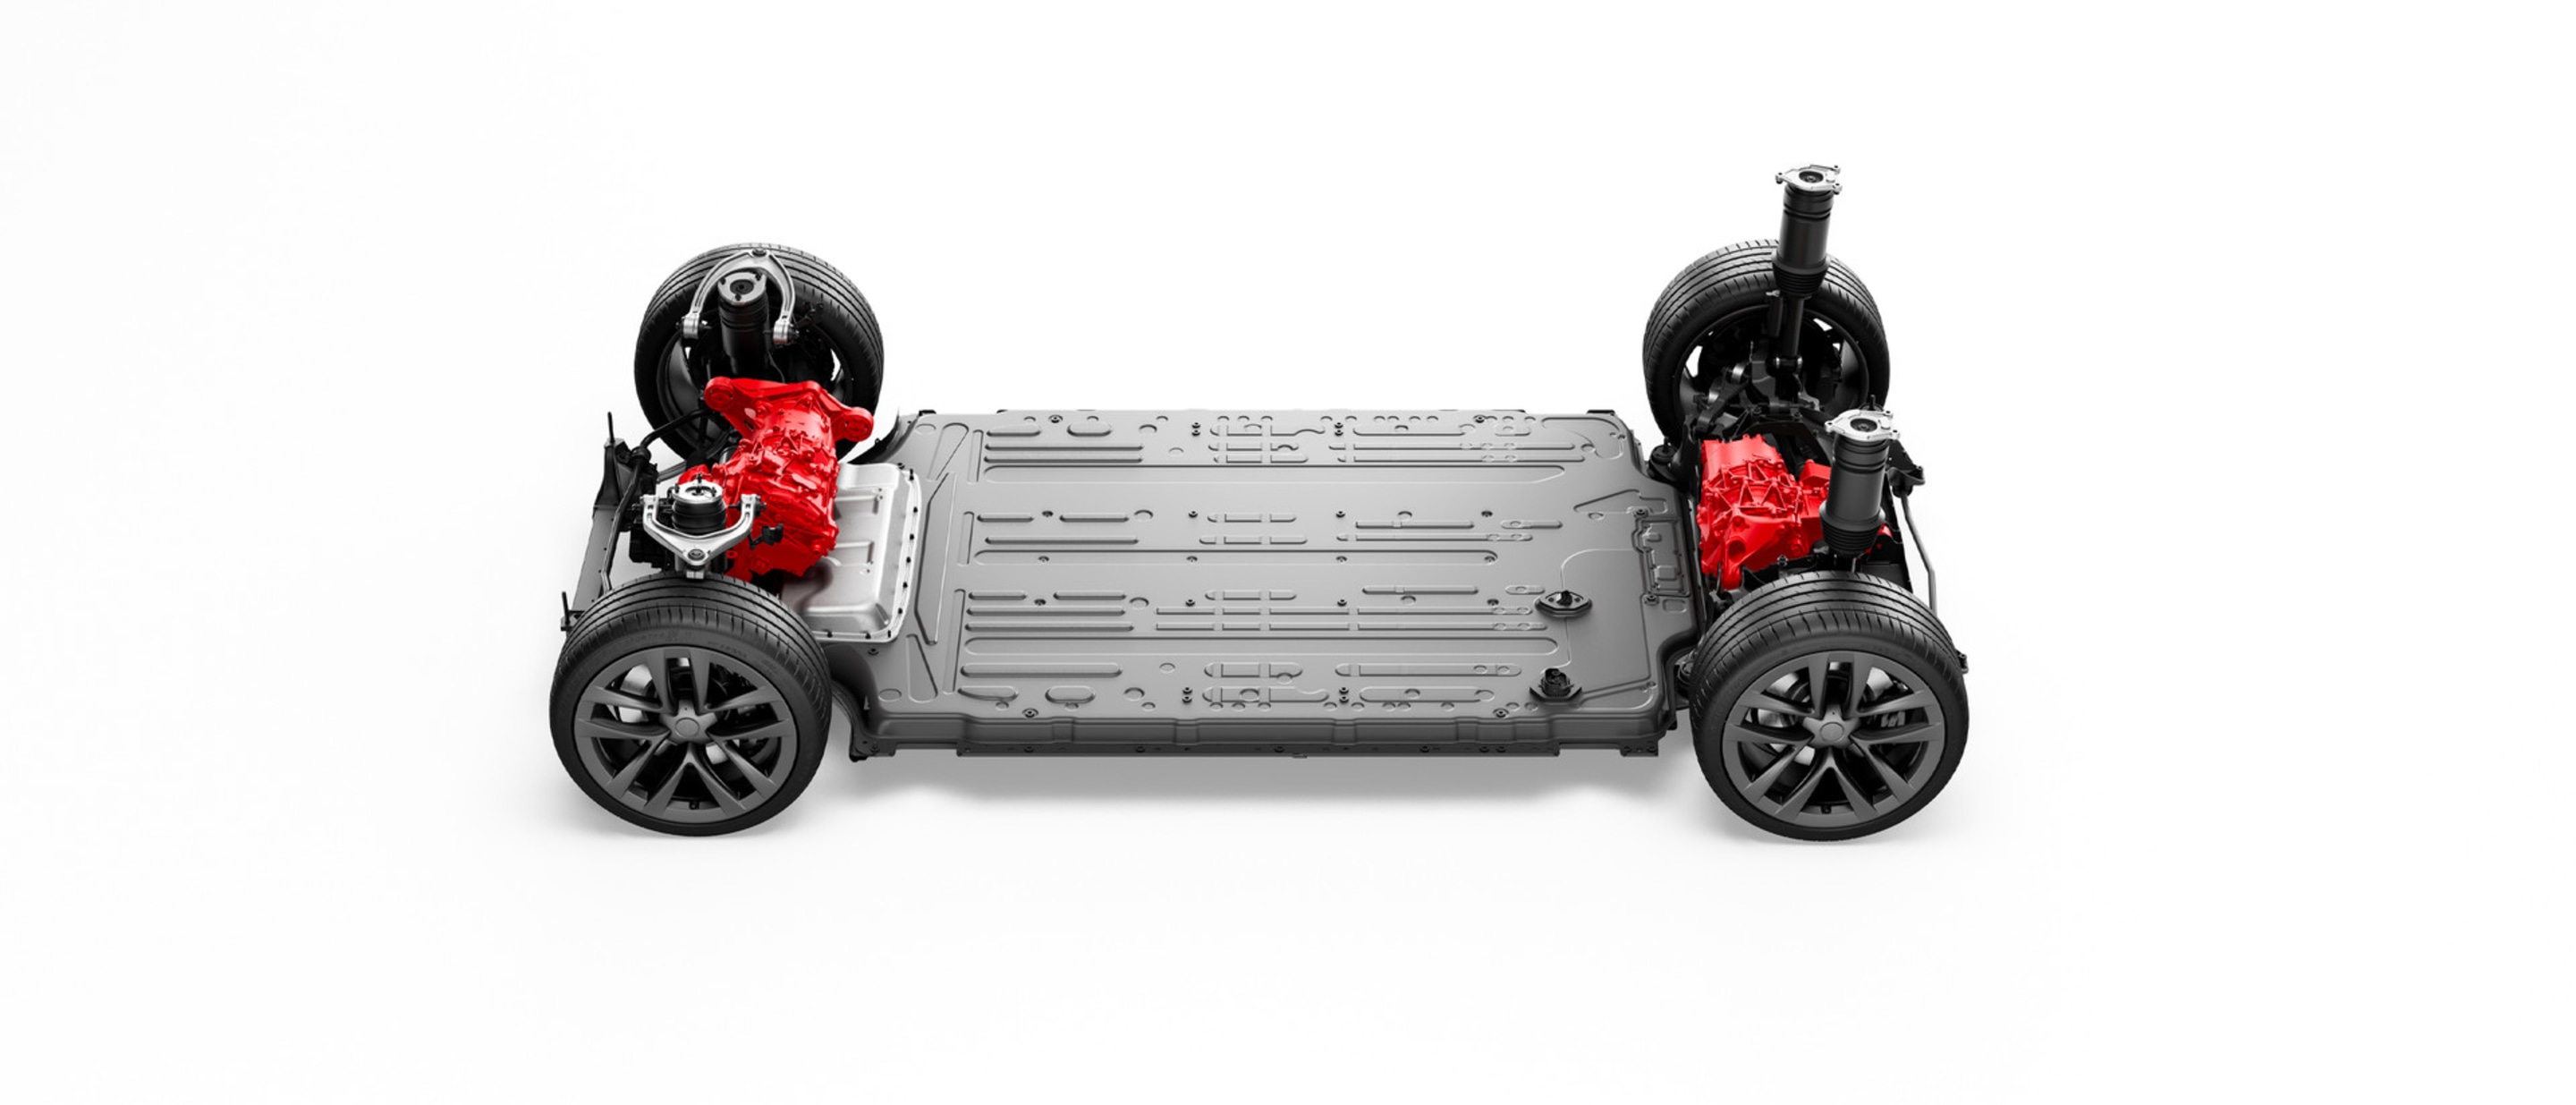 Ηλεκτρικό σύστημα μετάδοσης κίνησης και μπαταρία του Model S με διπλό κινητήρα-τετρακίνηση